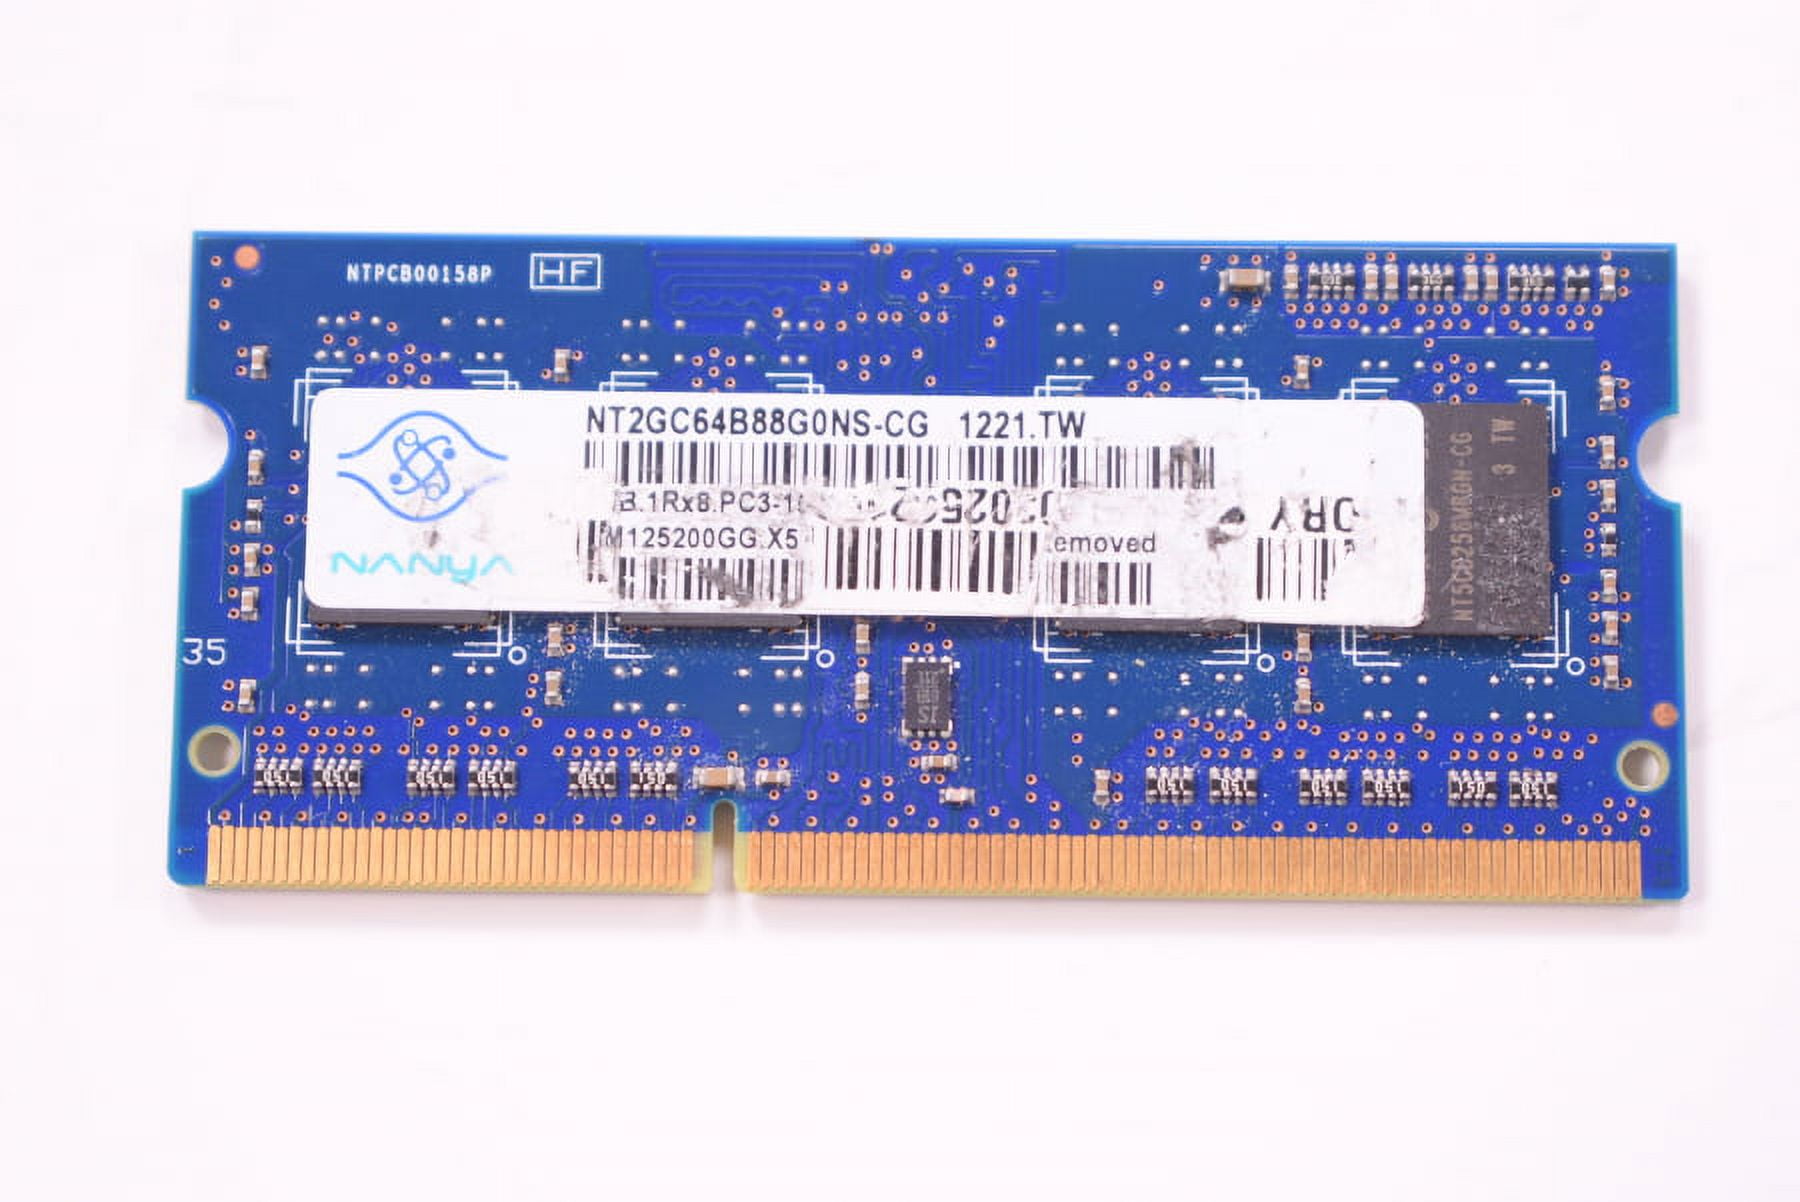 NANYA DDR3 2Rx4 PC3L-10600R 32GB （8G x4）